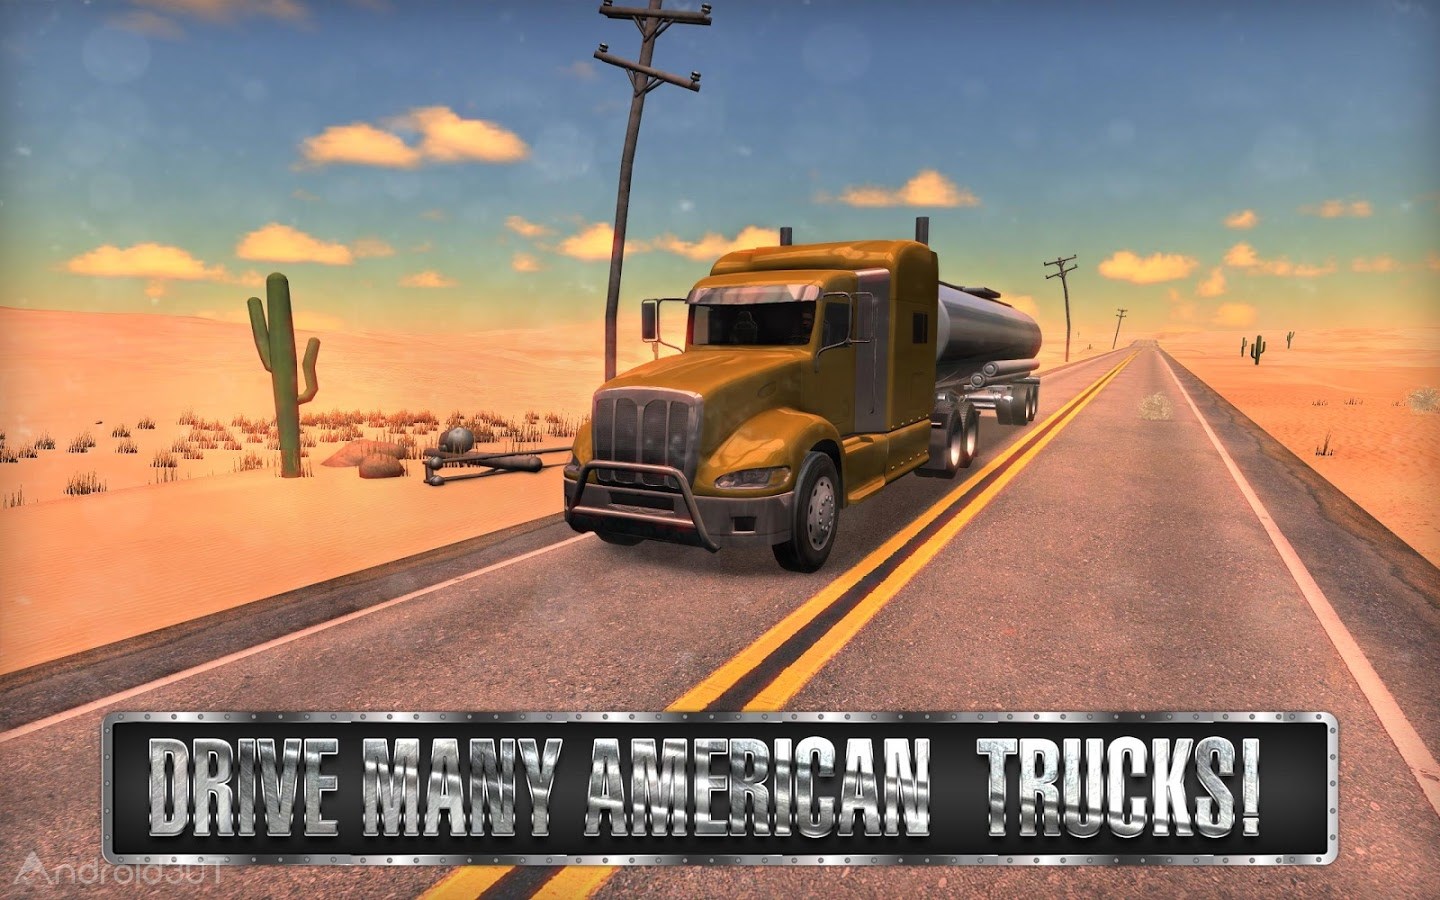 دانلود Truck Simulator USA 5.6.0 – بازی رانندگی با تریلی 18 چرخ اندروید